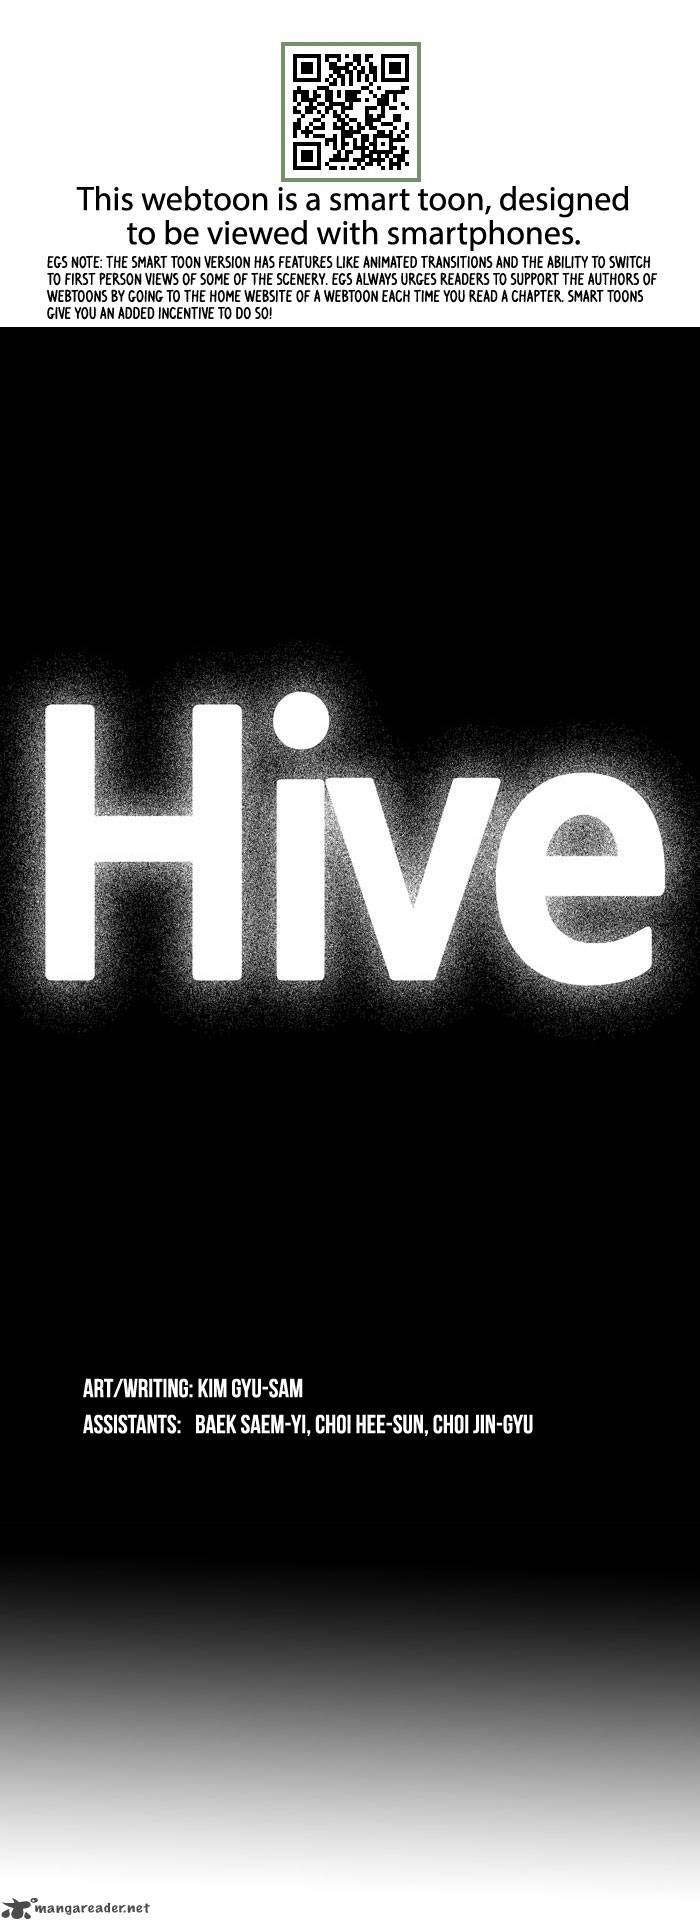 Hive 3 2